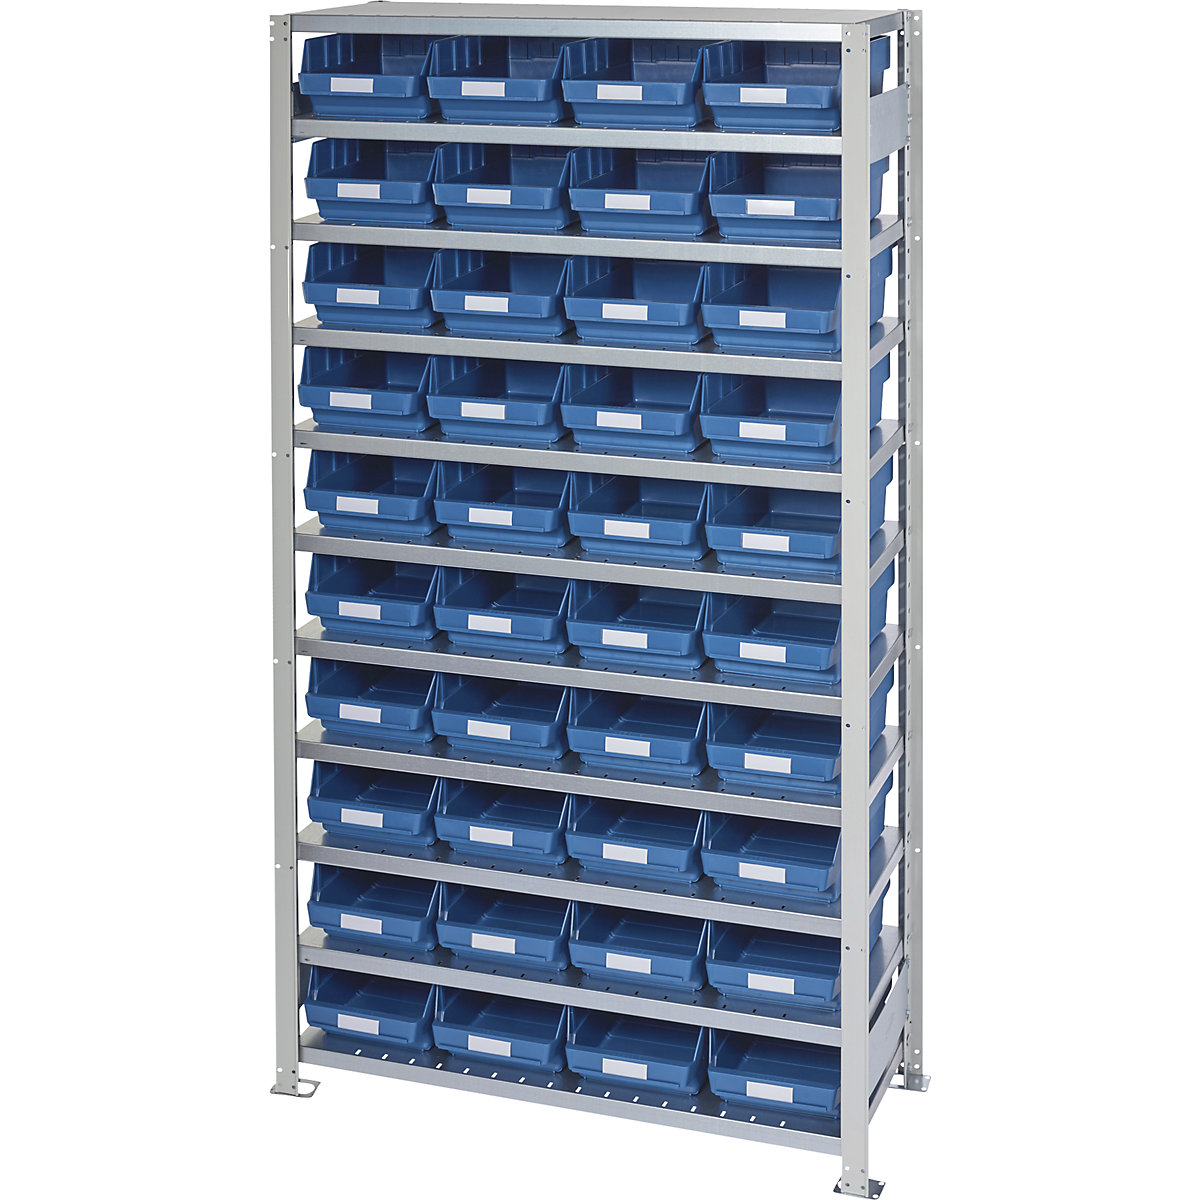 Estante de encaixar com caixas para estante – STEMO, altura da estante 2100 mm, estante básica, profundidade 400 mm, 40 caixas azuis-13